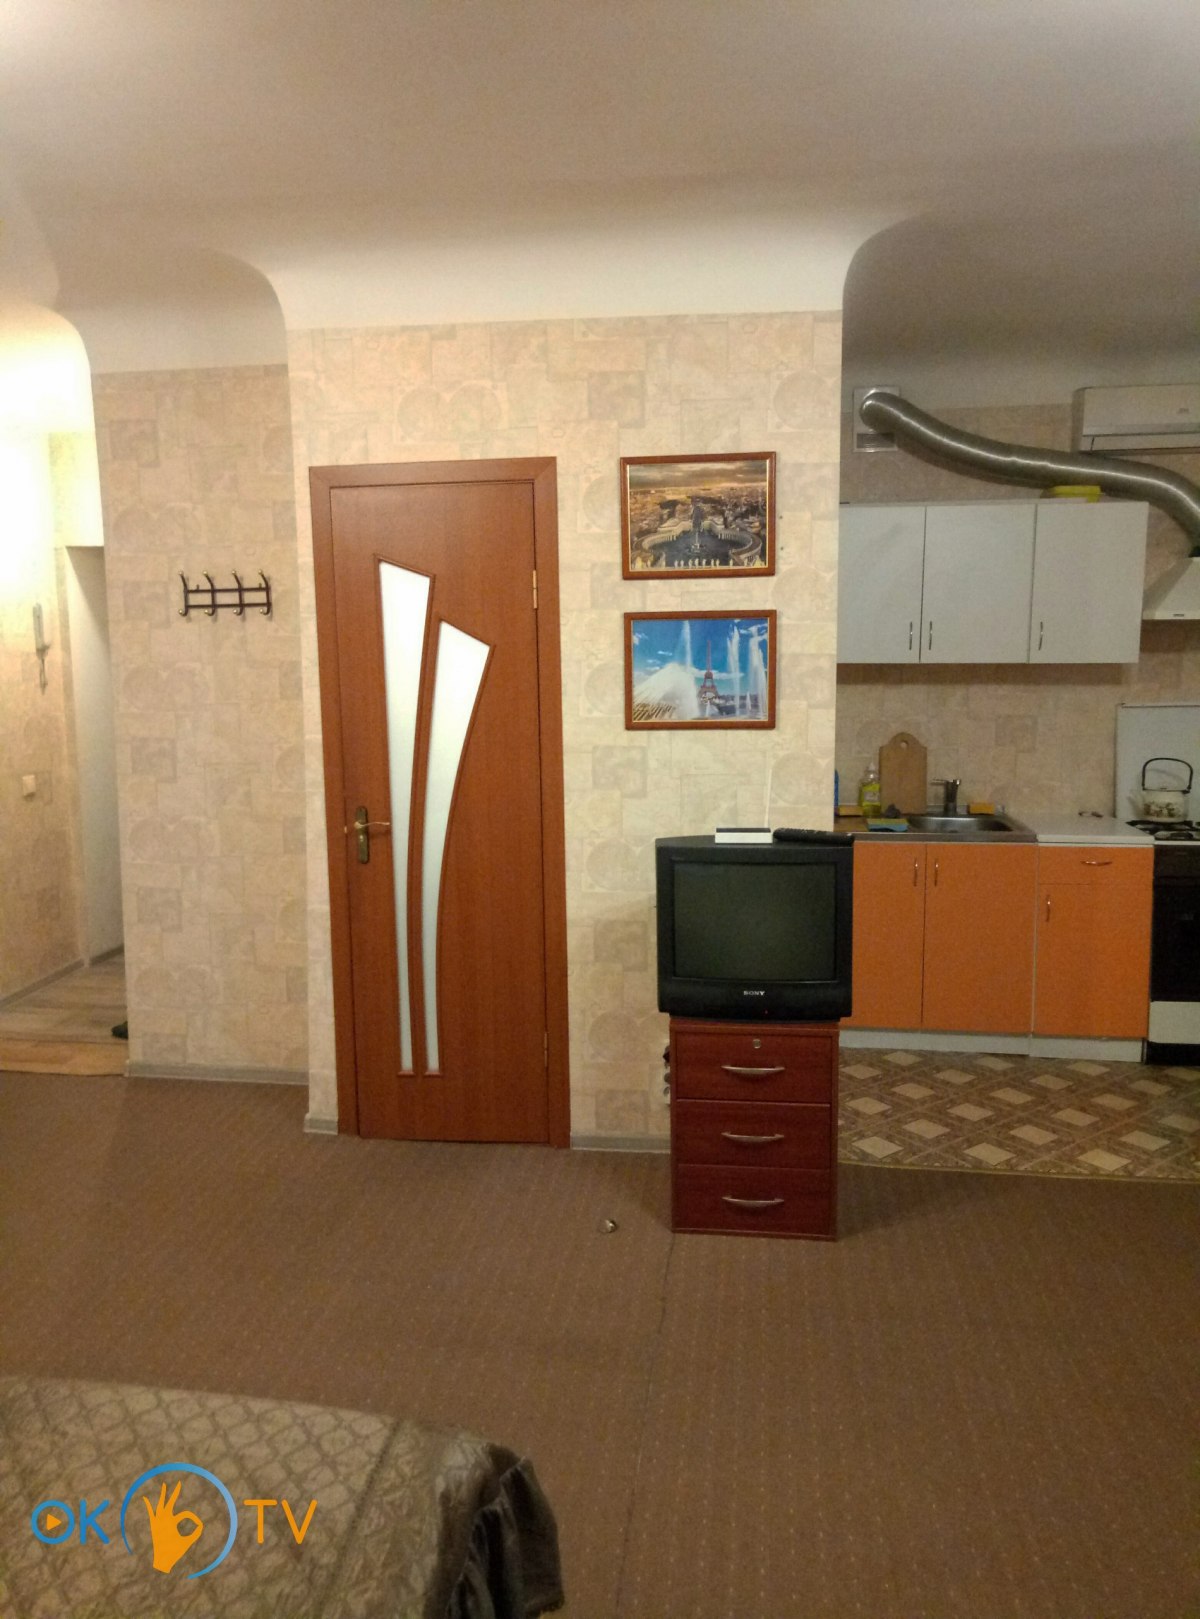 Квартира студио в Киеве посуточно недалеко от ЖД-вокзала и аэропорта «Киев» (Жуляны) фото 5